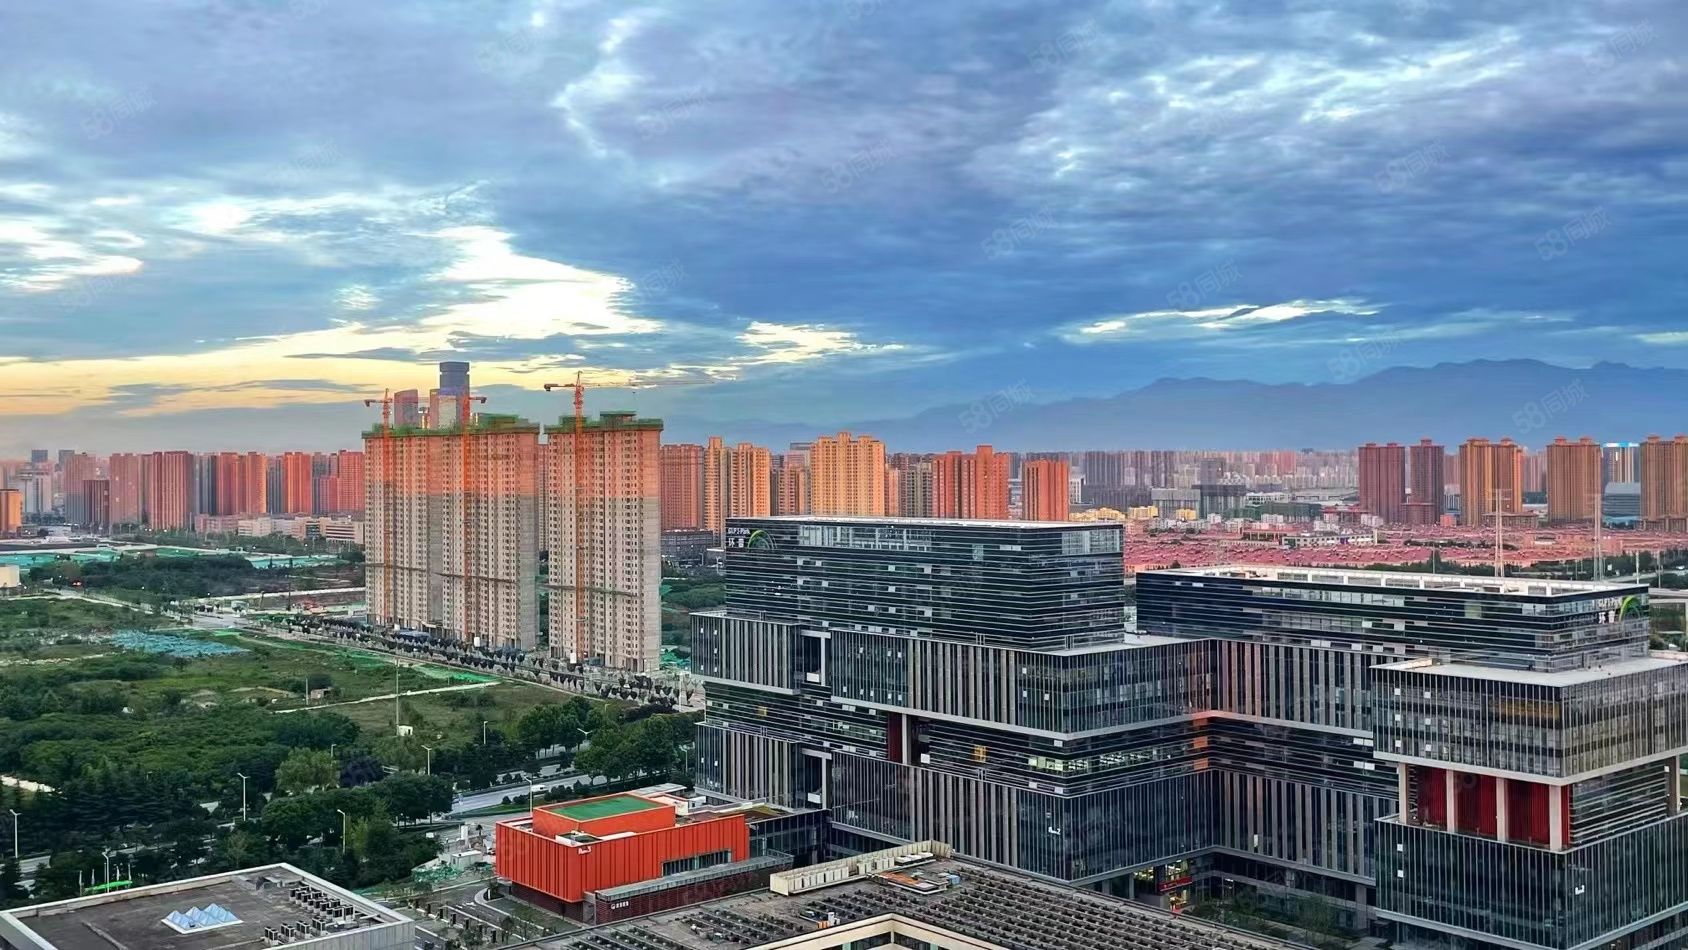 腾飞科汇城 中软国际 软件新城 环普 华为 丈八西路美寓华庭